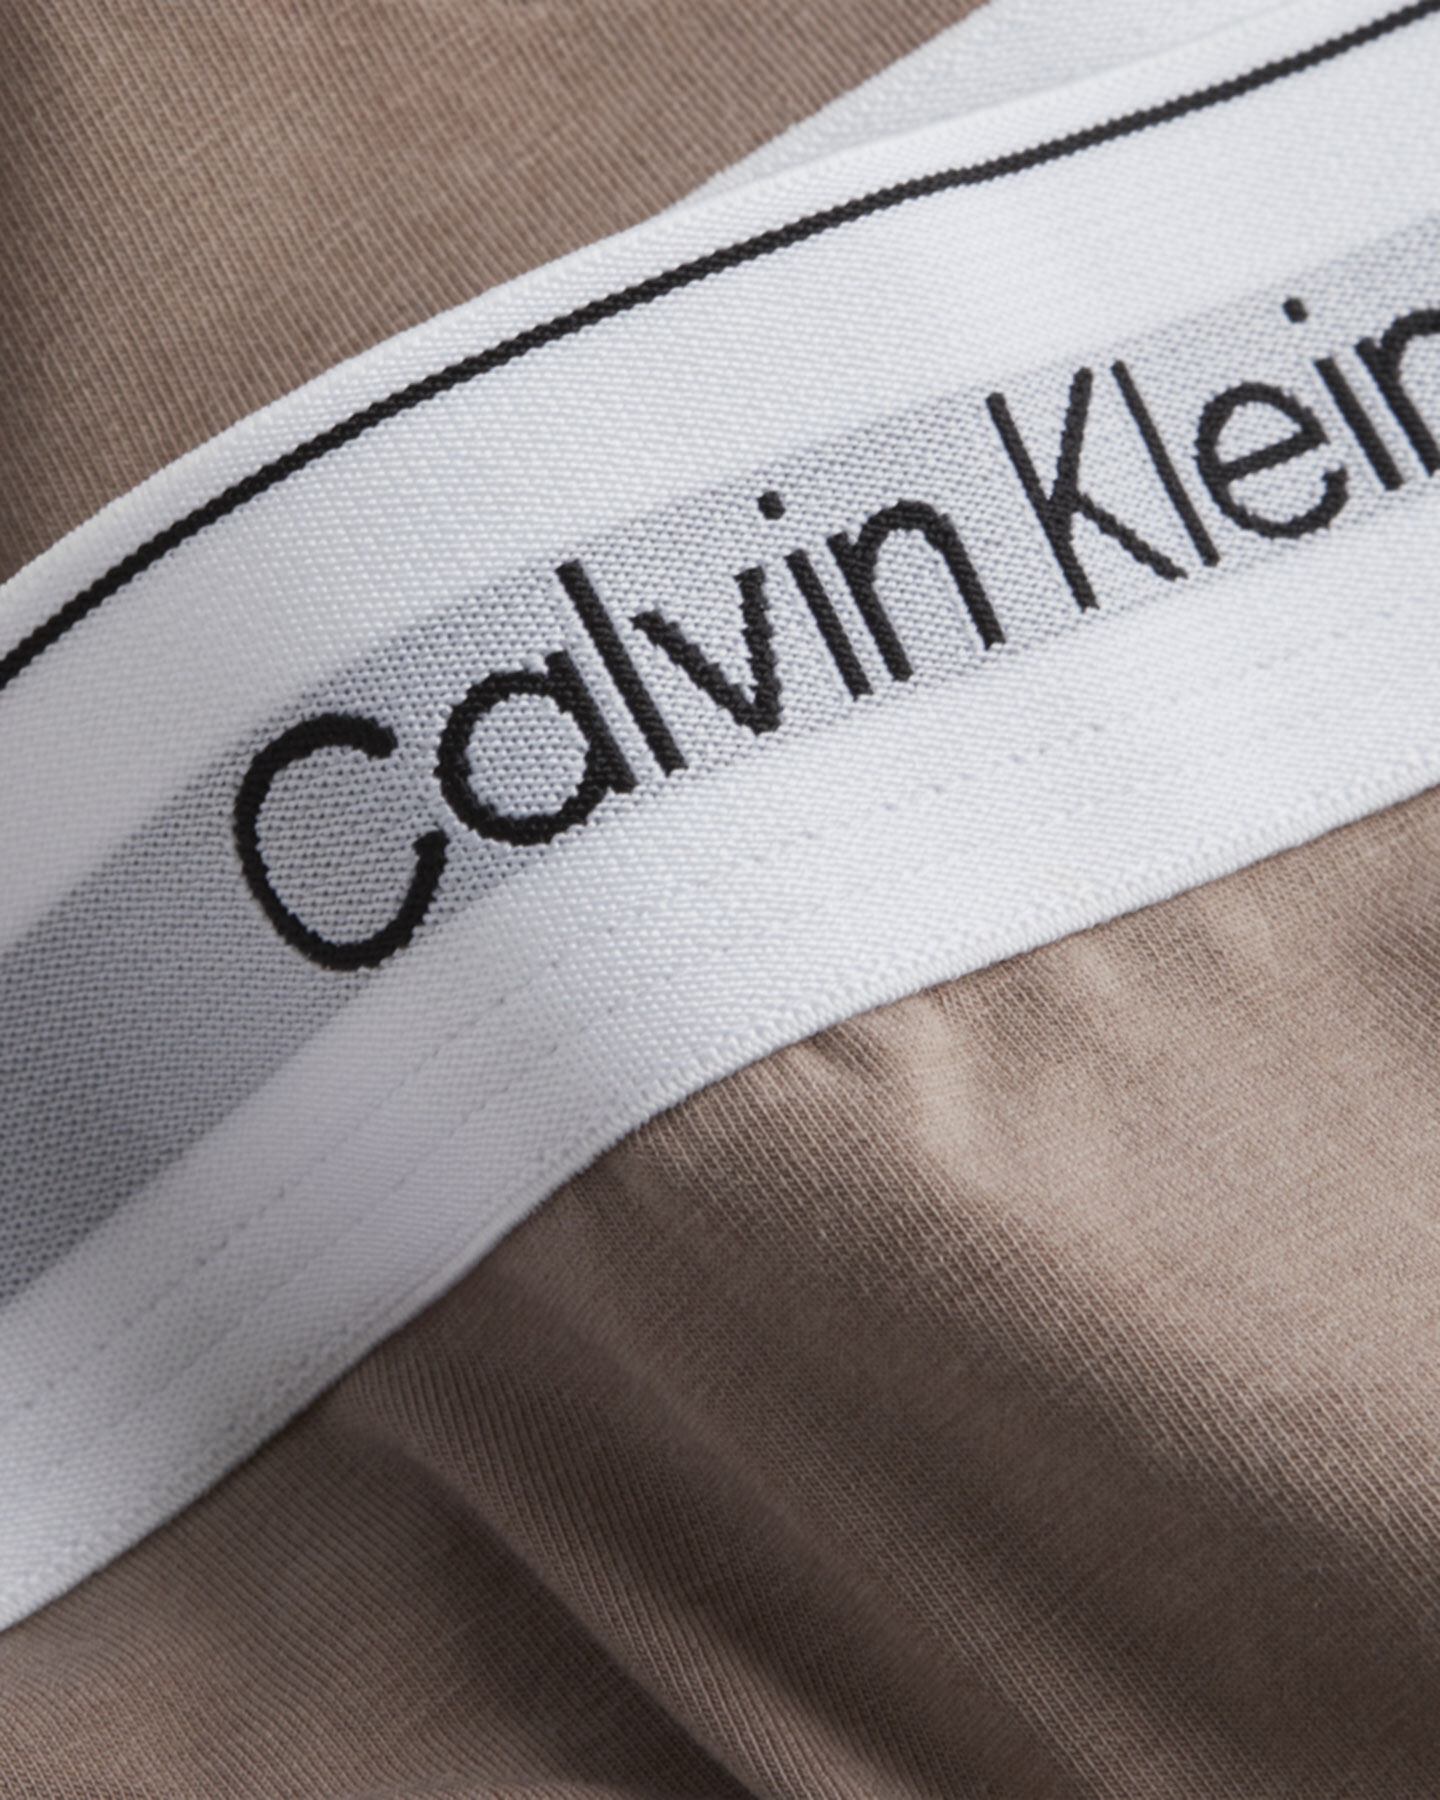  Intimo CALVIN KLEIN UNDERWEAR SLIP THONG W S4113405|5R4|XS scatto 2